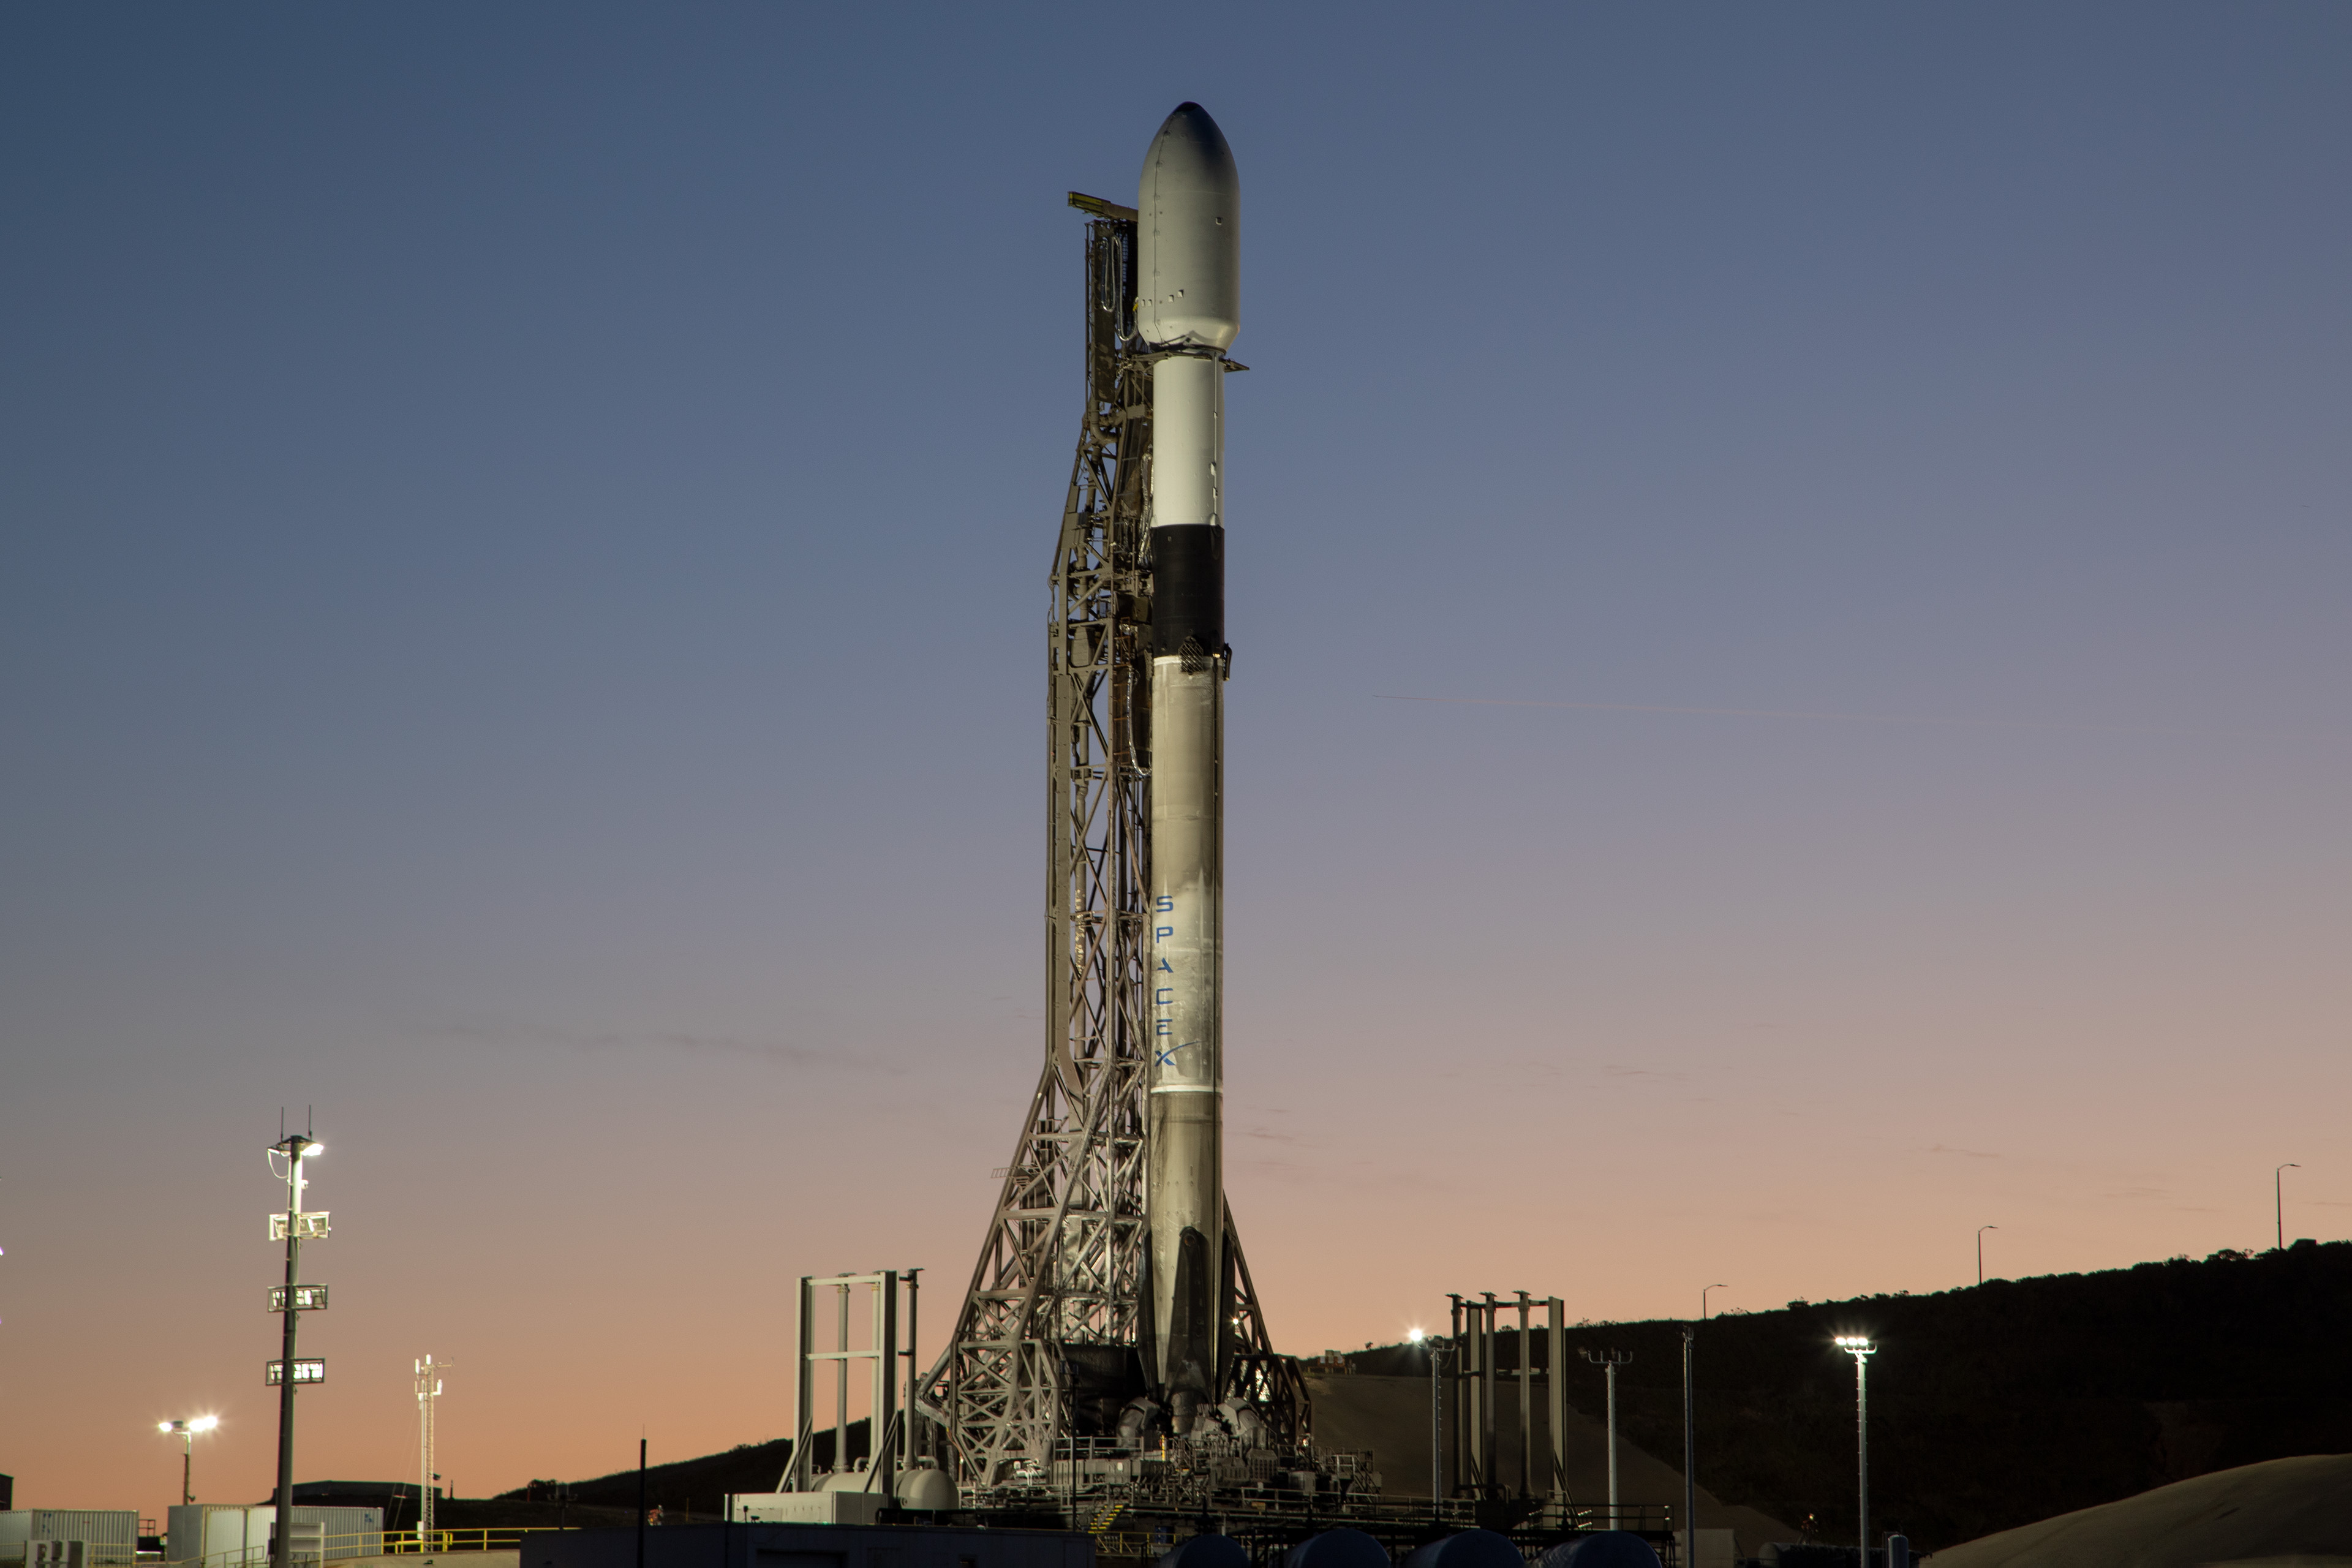 SpaceX lanza el satélite Maxar con el módulo TEMPO de la NASA por 90 millones de dólares para vigilar la contaminación atmosférica en Norteamérica